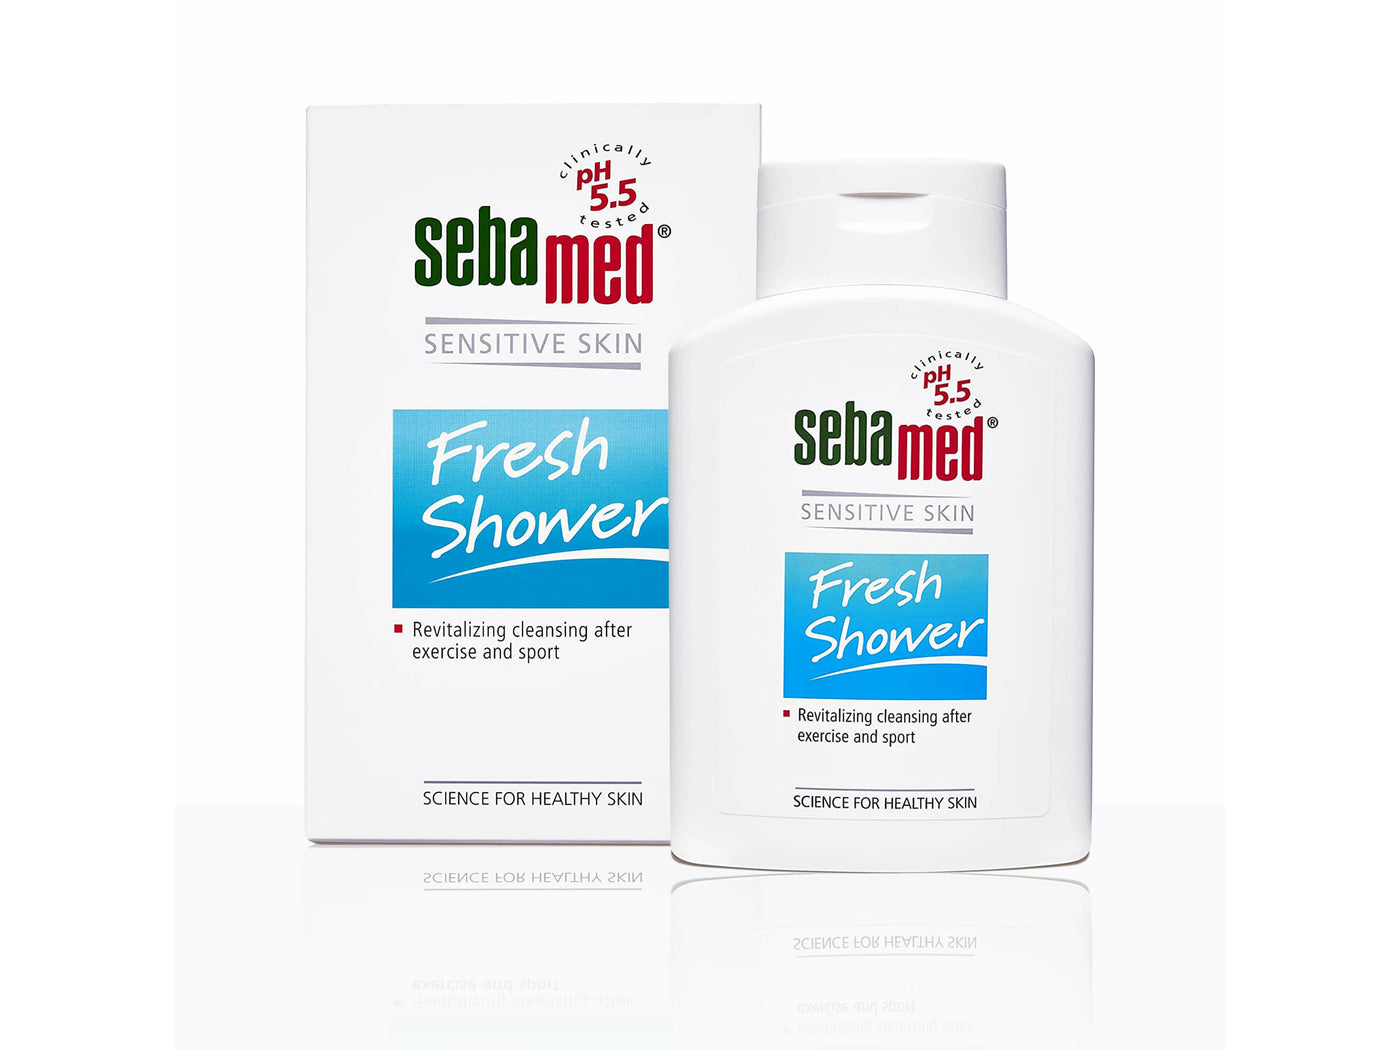 Buy Sebamed Sensitive Skin Fresh Shower Online Clinikally